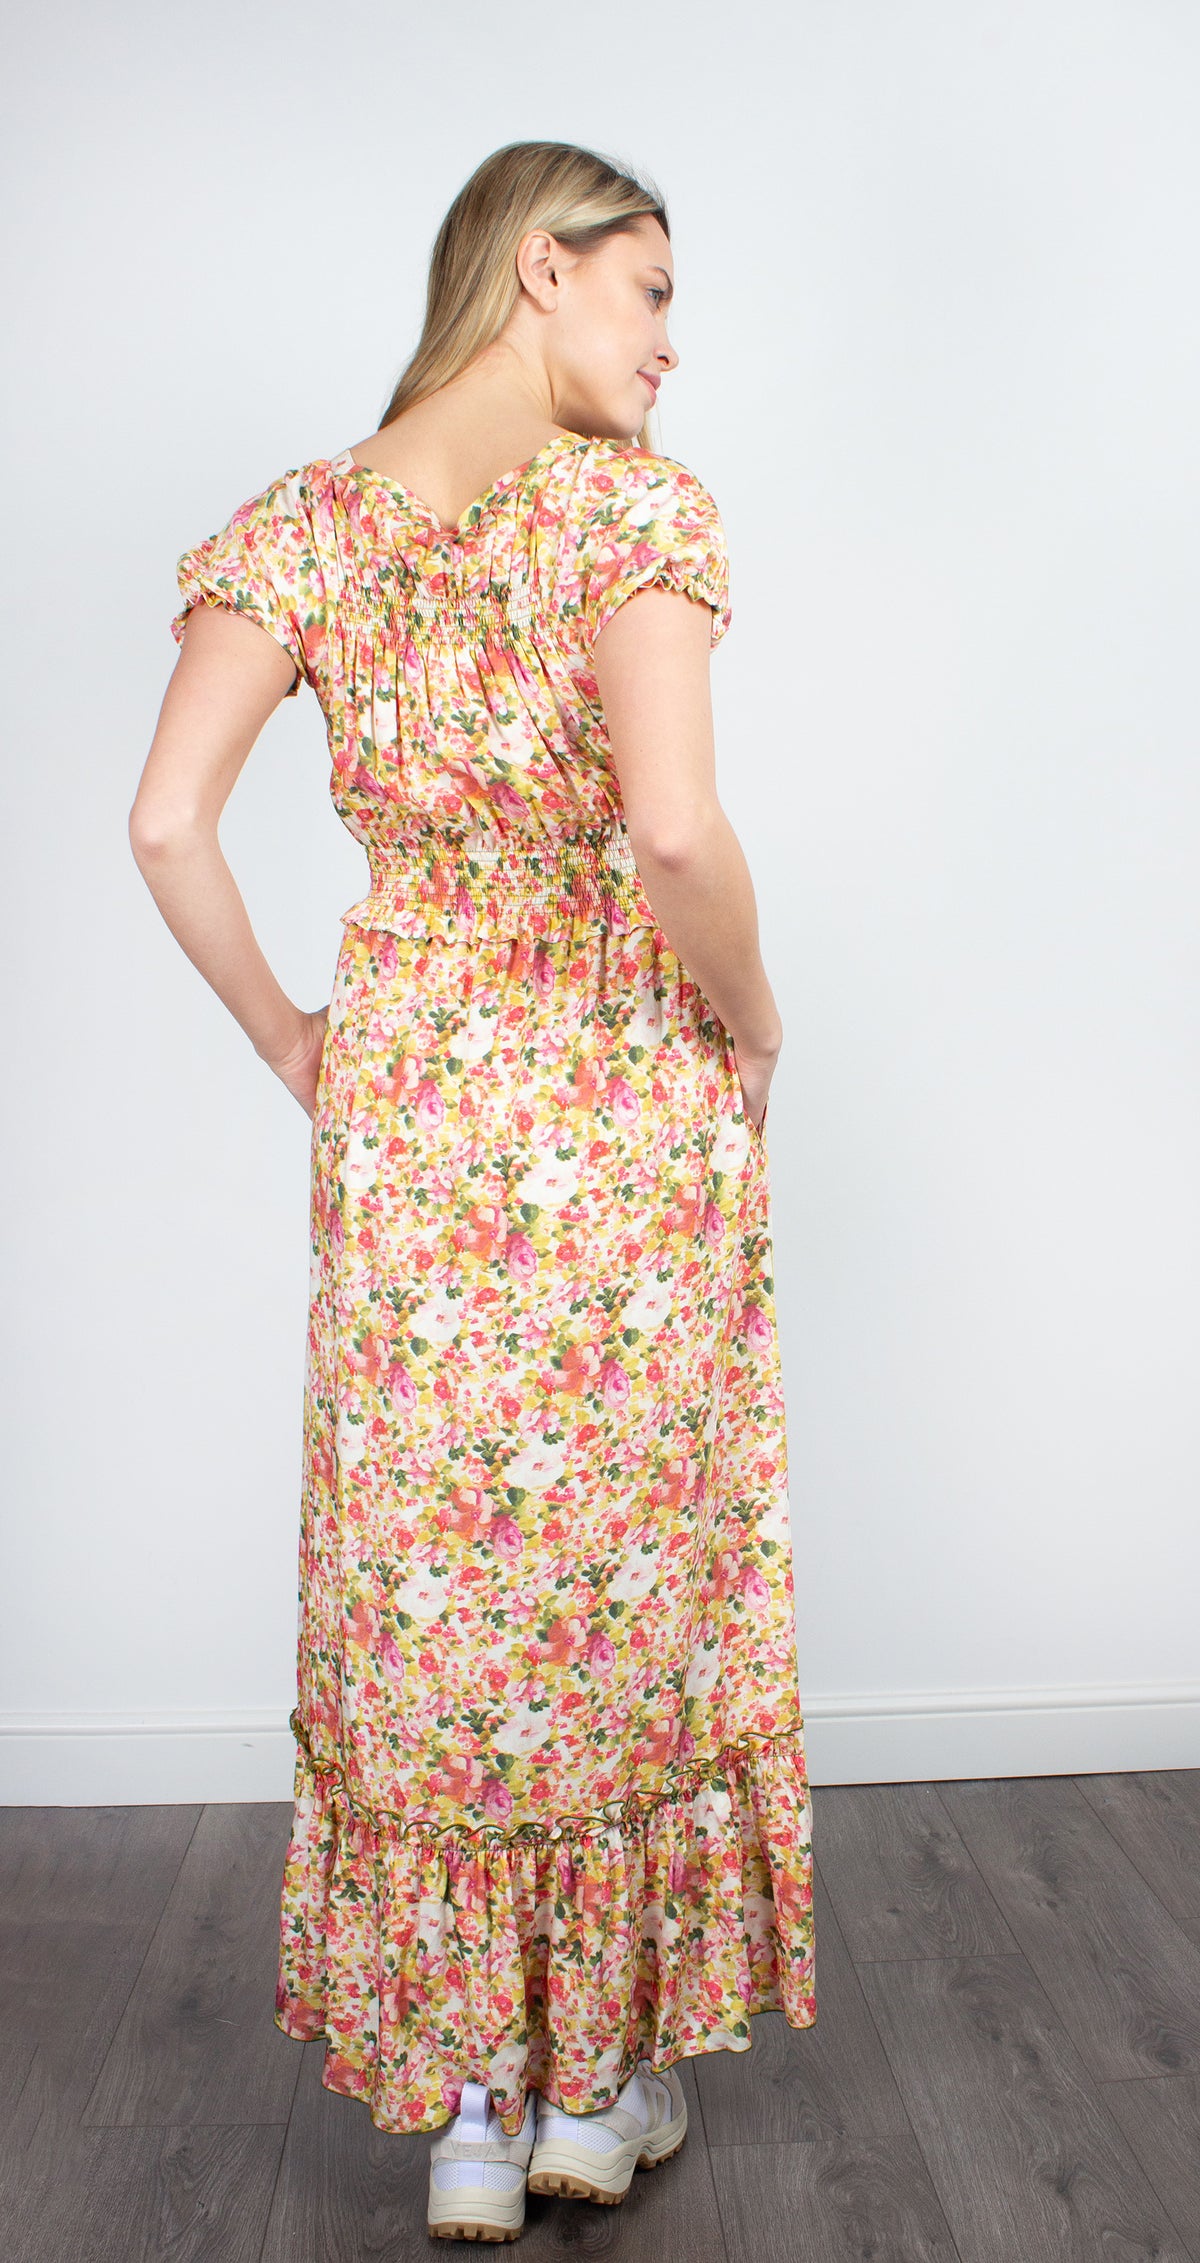 Loretta Caponi Stefania floral-print dress